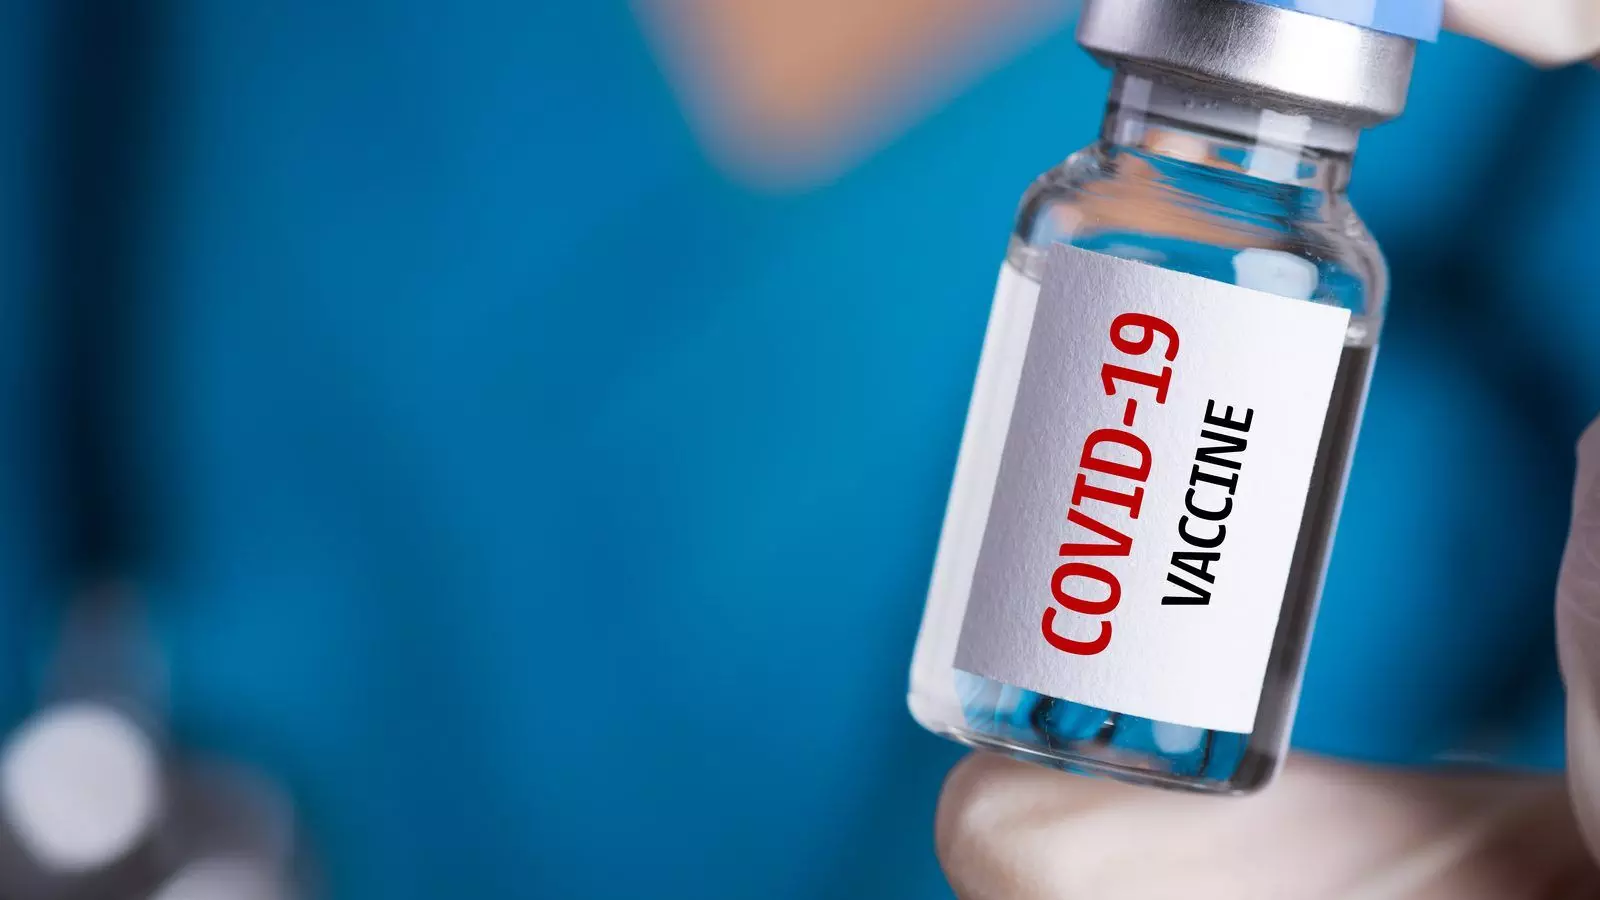 भारत बॉयोटेक द्वारा निर्मित नाक से दी जाने वाली कौराना वैक्सीन का दुसरे चरण का परीक्षण पूर्ण